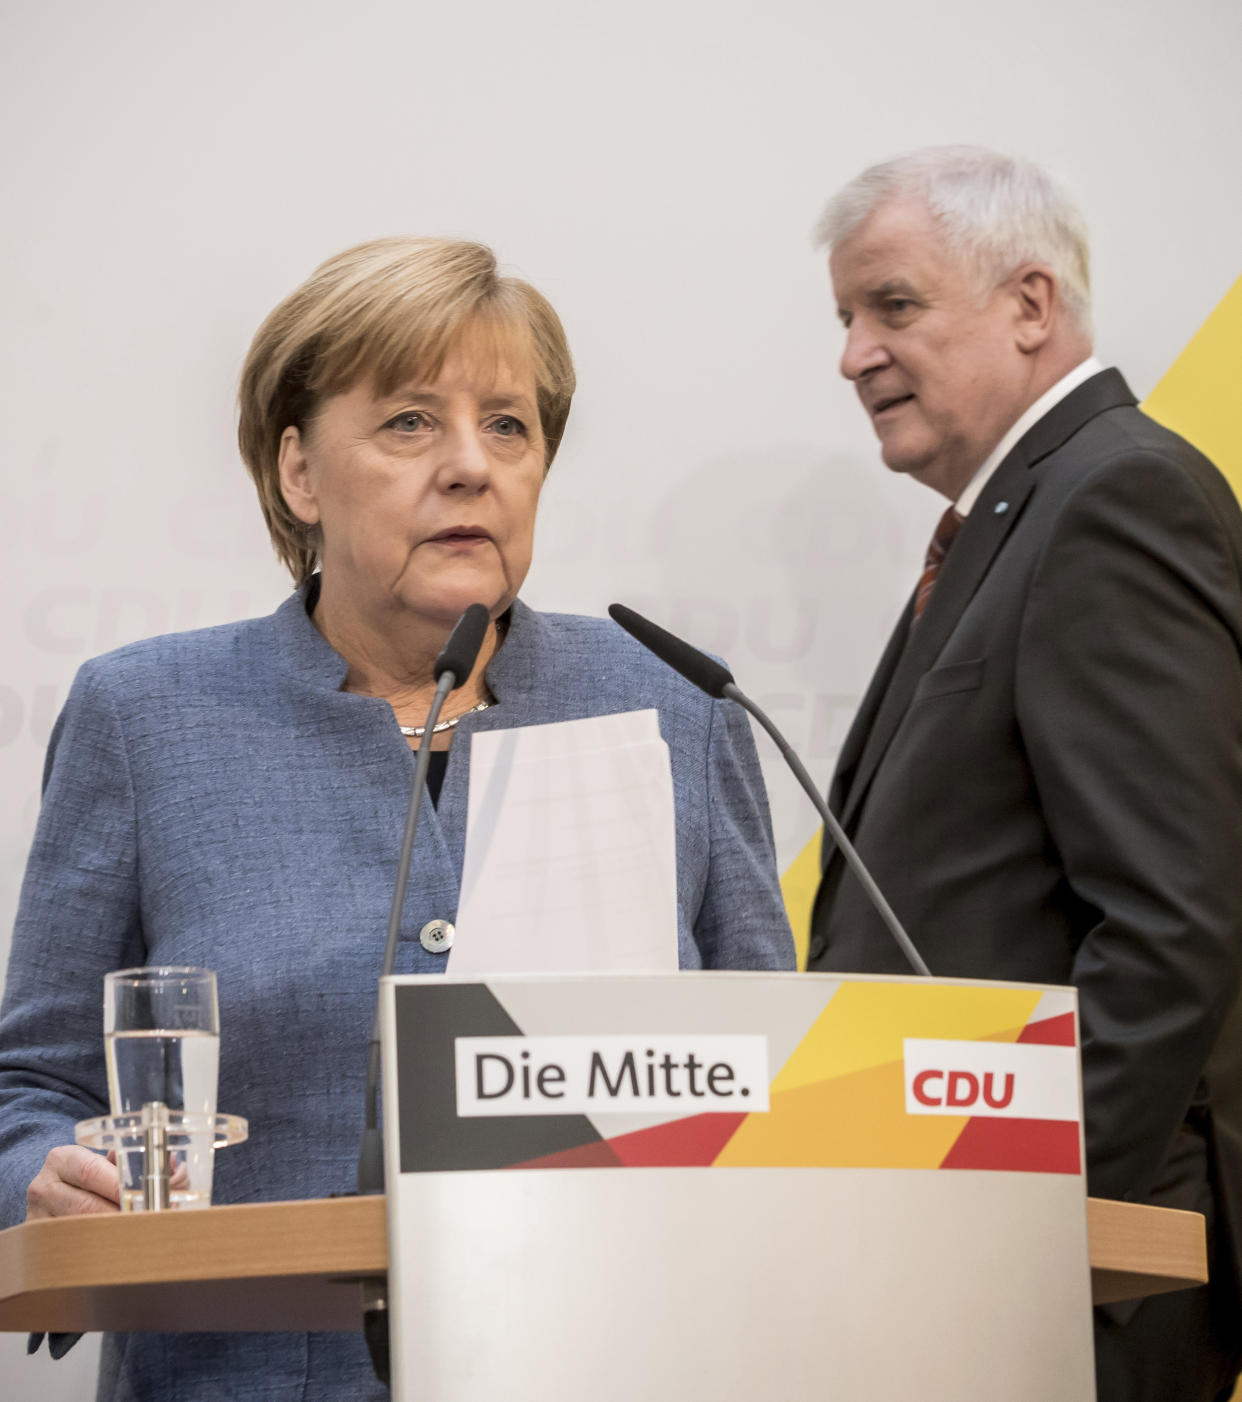 Der “Kompromiss” zur Obergrenze zwischen CDU und CSU ist nichts weiter als Camouflage, findet Jan Rübel. Bild: Michael Kappeler/dpa via AP